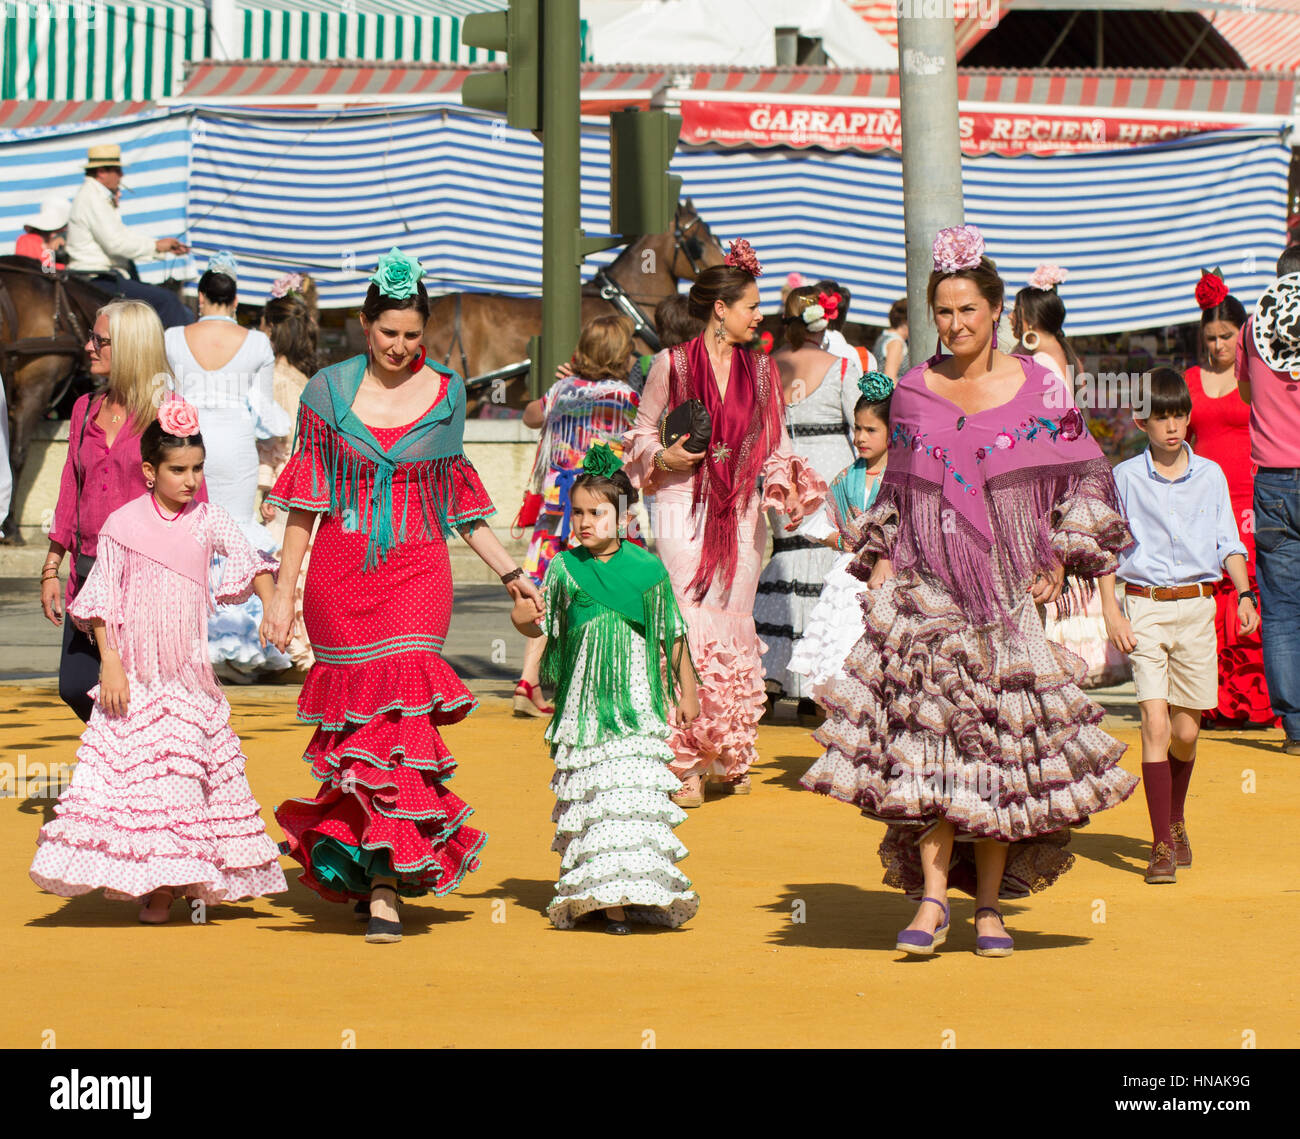 Sevilla, Spanien - 25 APR: Frauen gekleidet in traditionellen Kostümen auf der Sevillas April Fair am 25. April 2014 in Sevilla, Spanien Stockfoto